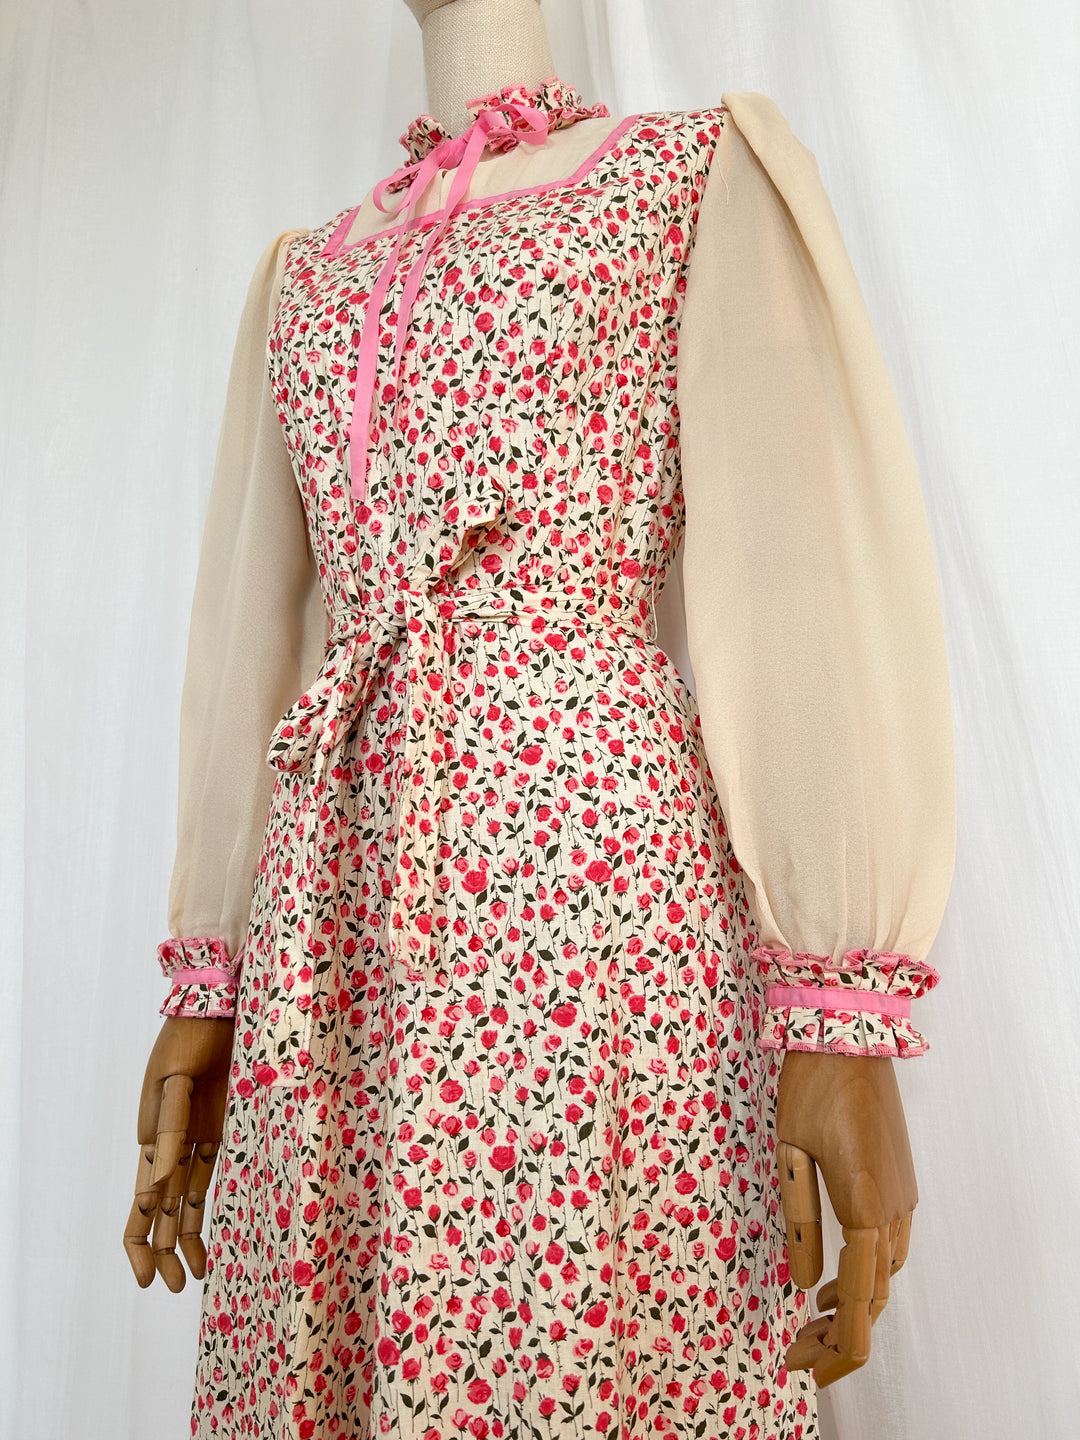 Pretty Romantic Rose Floral Cotton 70s Dress